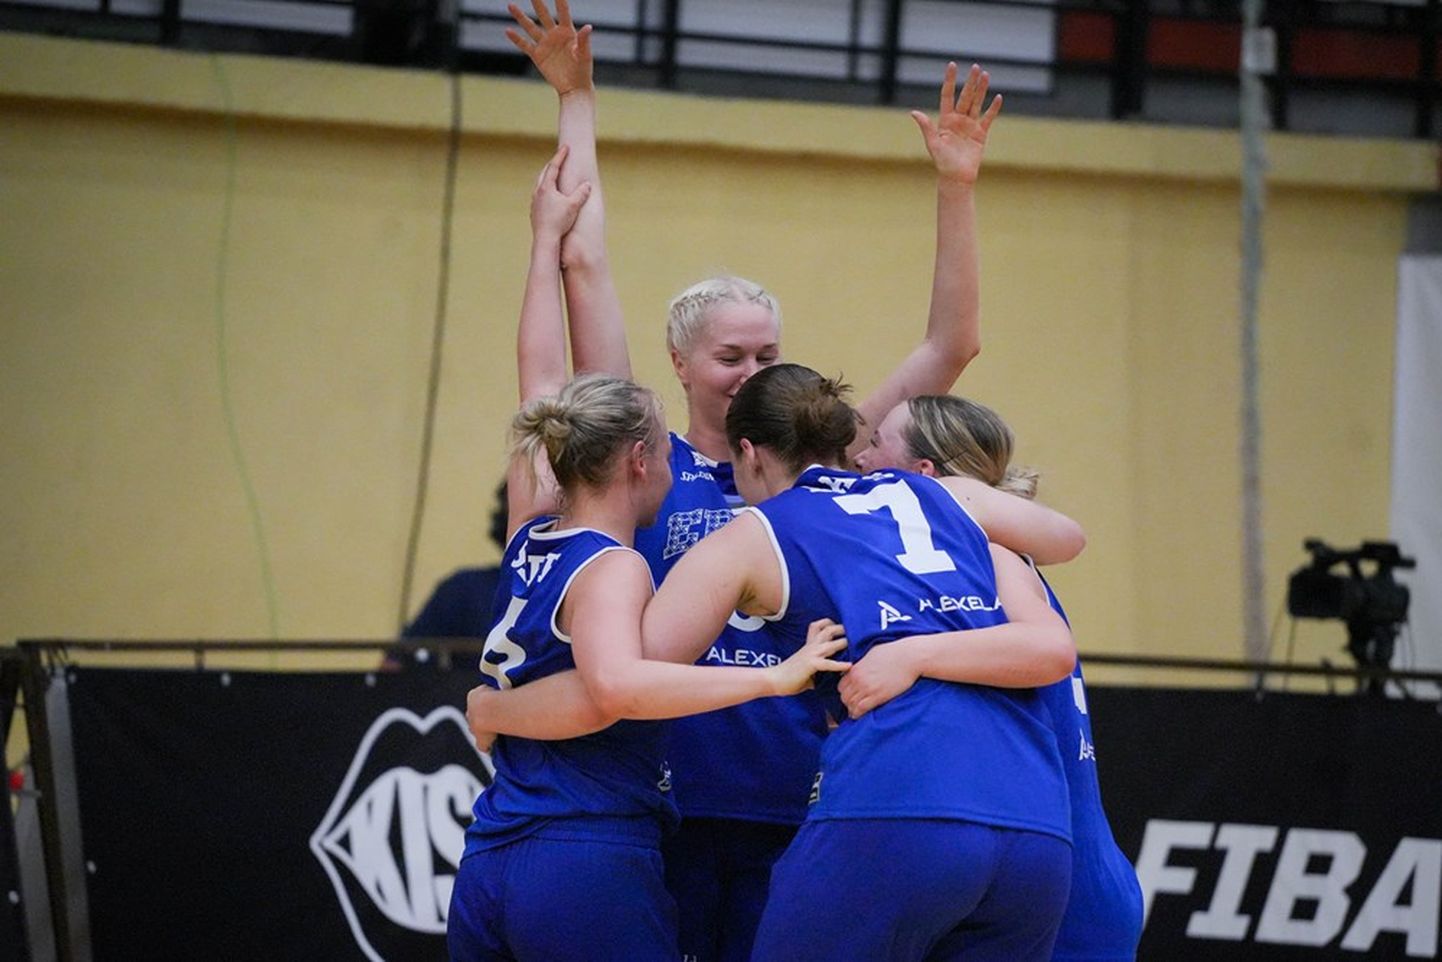 Eesti naiskonna võidurõõm pärast EM-pileti teenimist. Üksteist õnnitlevad Marie Anette Sepp (vasakul), Kadri-Ann Lass (nr 7), Annika Köster (taga) ja Johanna Eliise Teder.